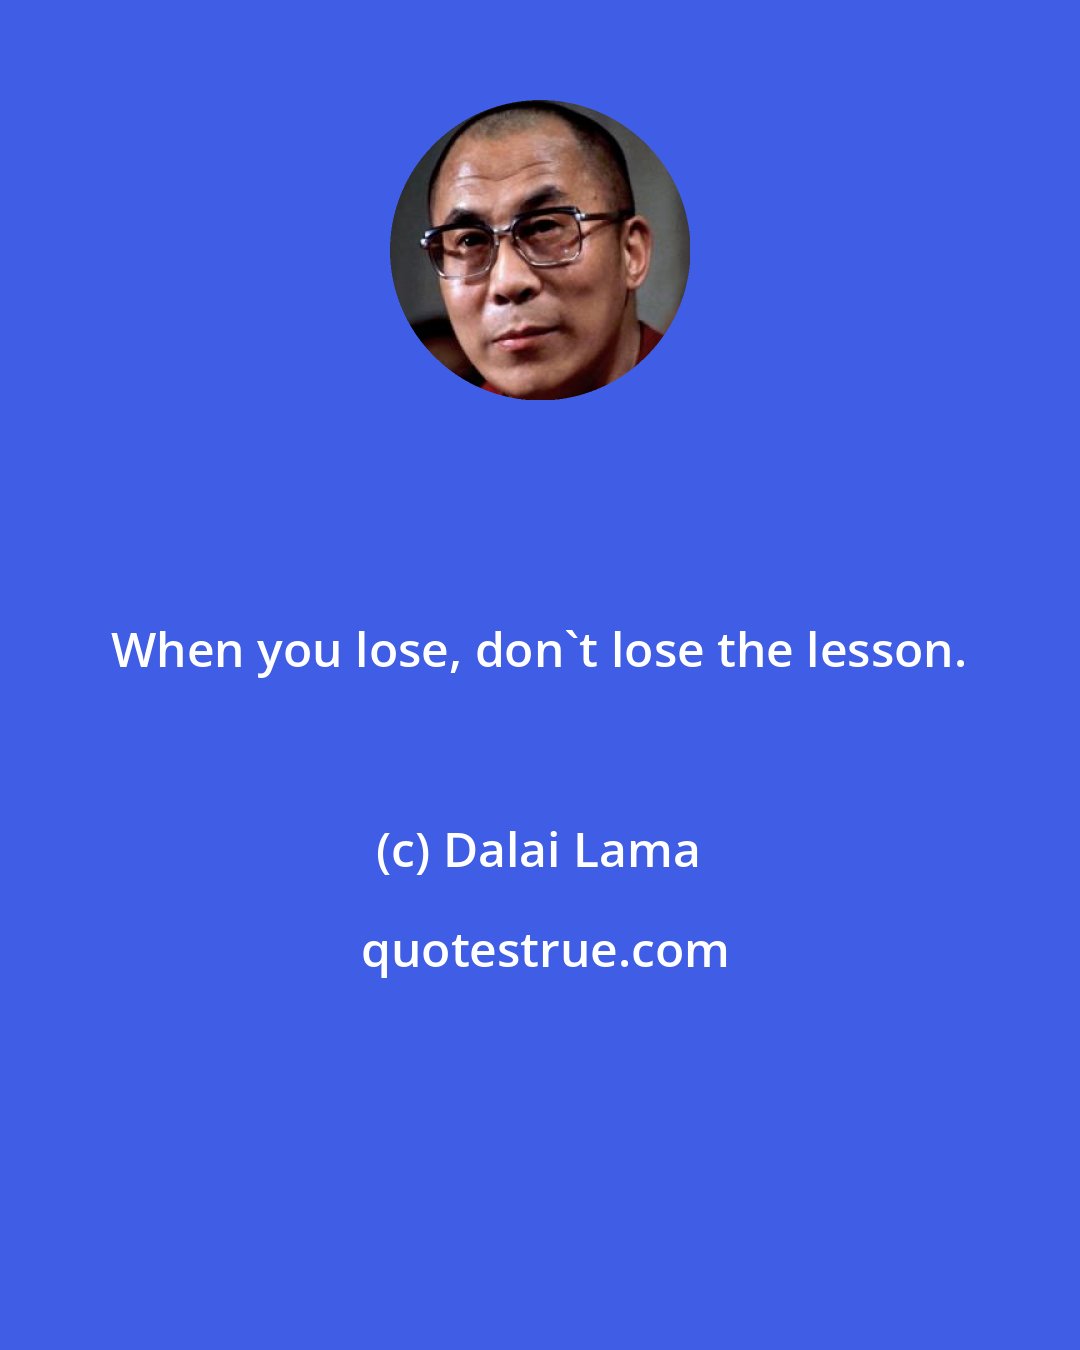 Dalai Lama: When you lose, don't lose the lesson.